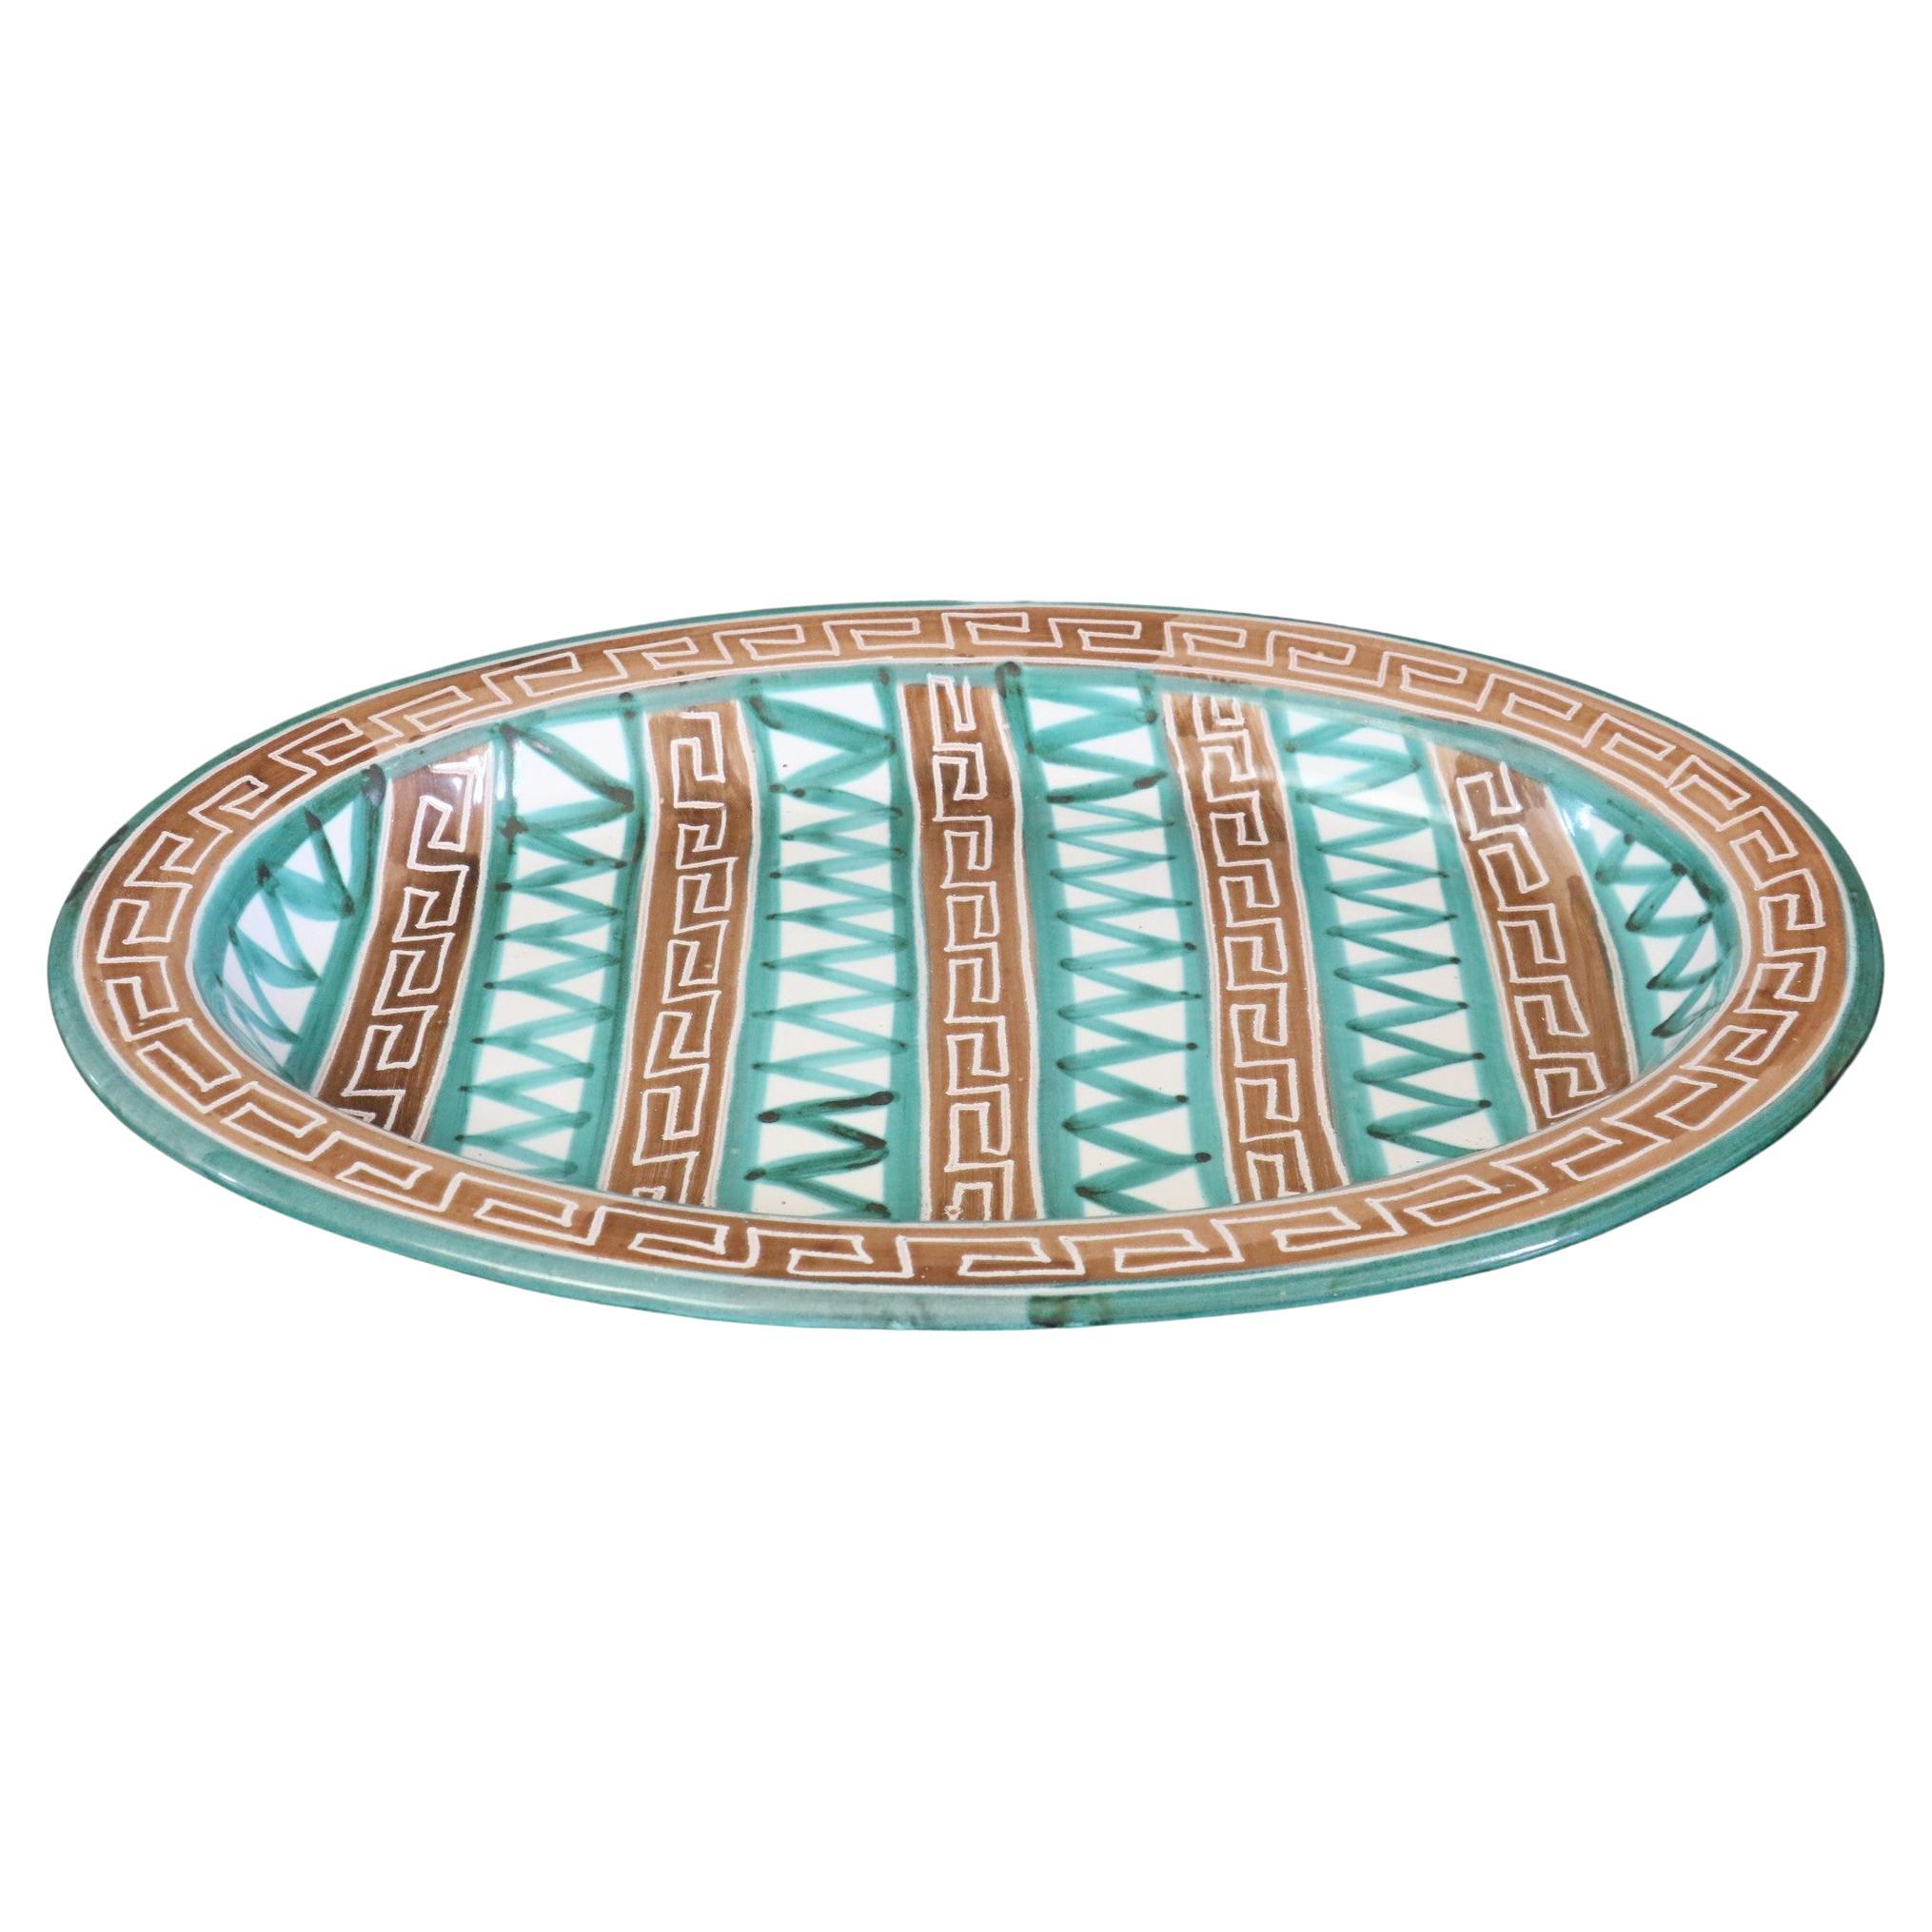 Robert Picault, grand plat ovale en céramique, assiette, signé, Vallauris, France 1950s

Grand plat émaillé dans des tons blancs, verts et bruns. Il s'agit d'un magnifique et très grand centre de table en céramique.
Décorations géométriques. 
En